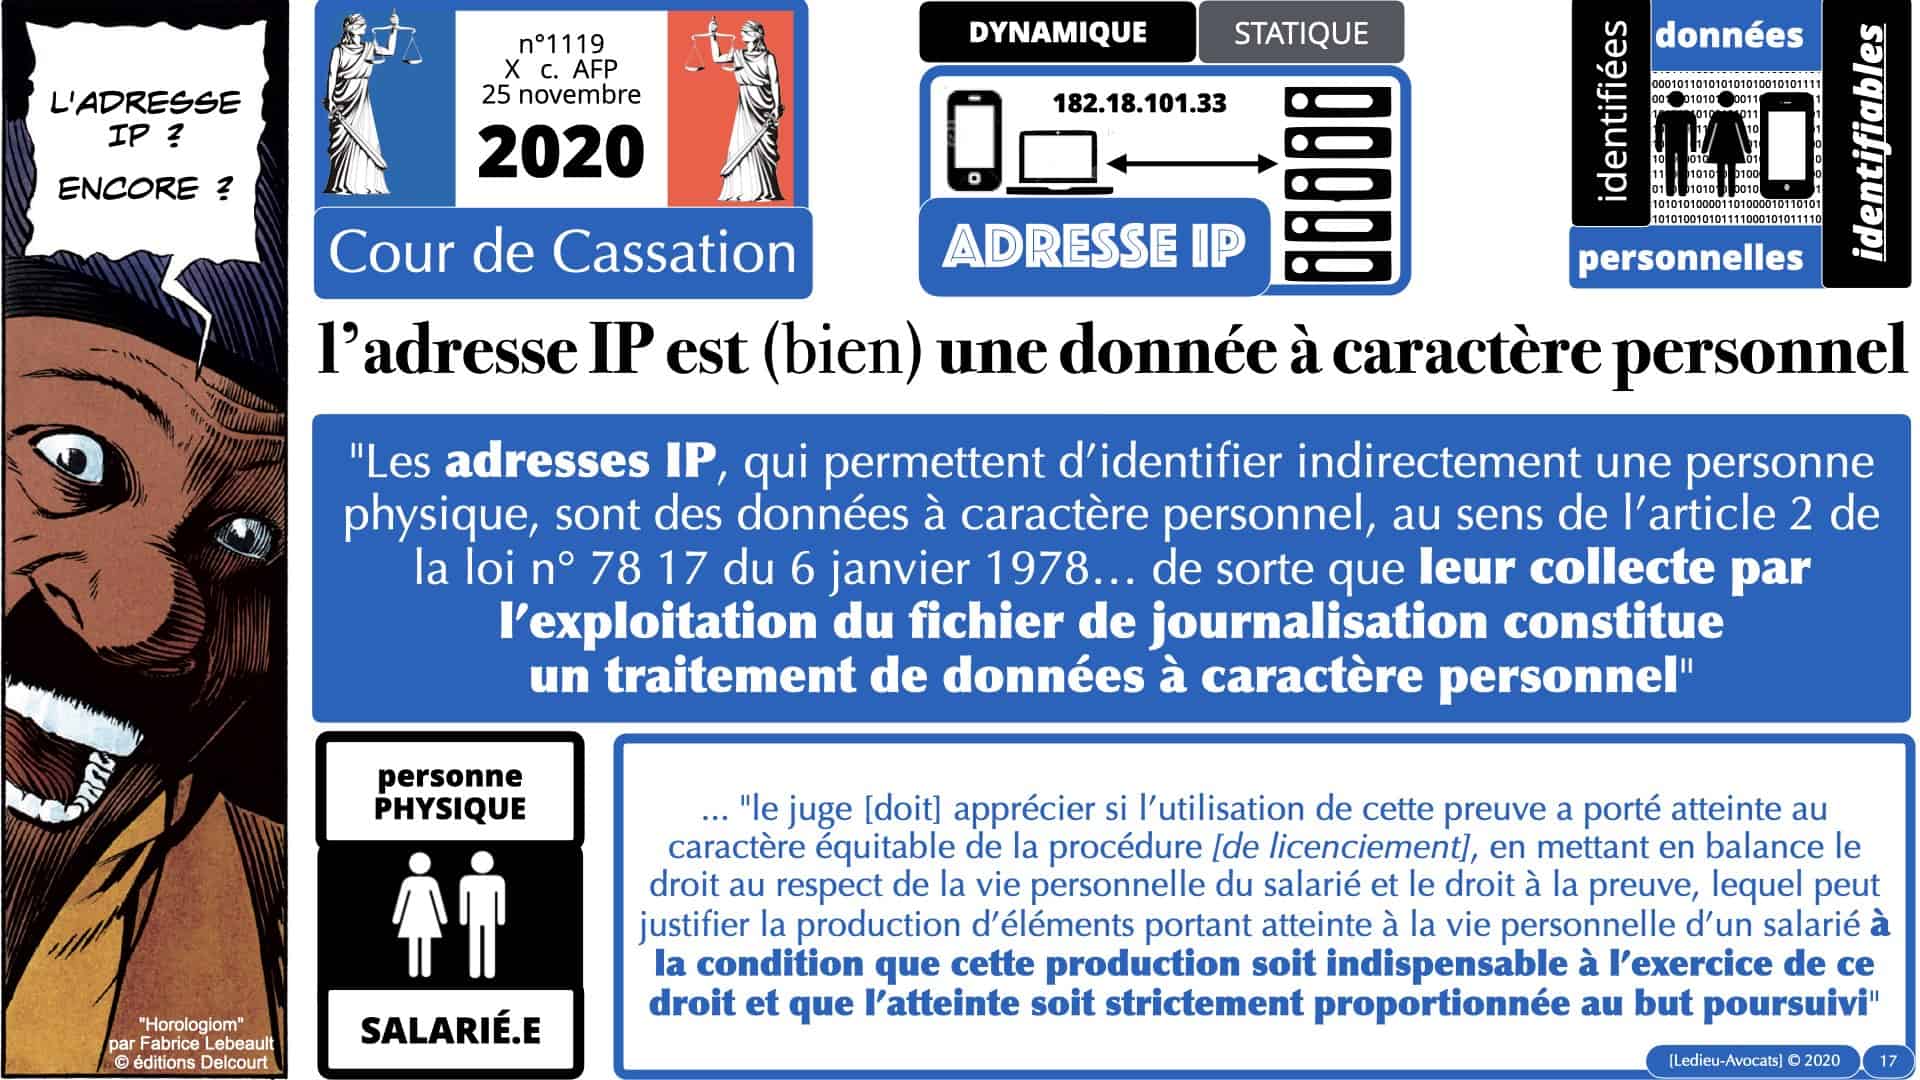 314 PRO BTP © Ledieu-avocat 03-12-2020.017